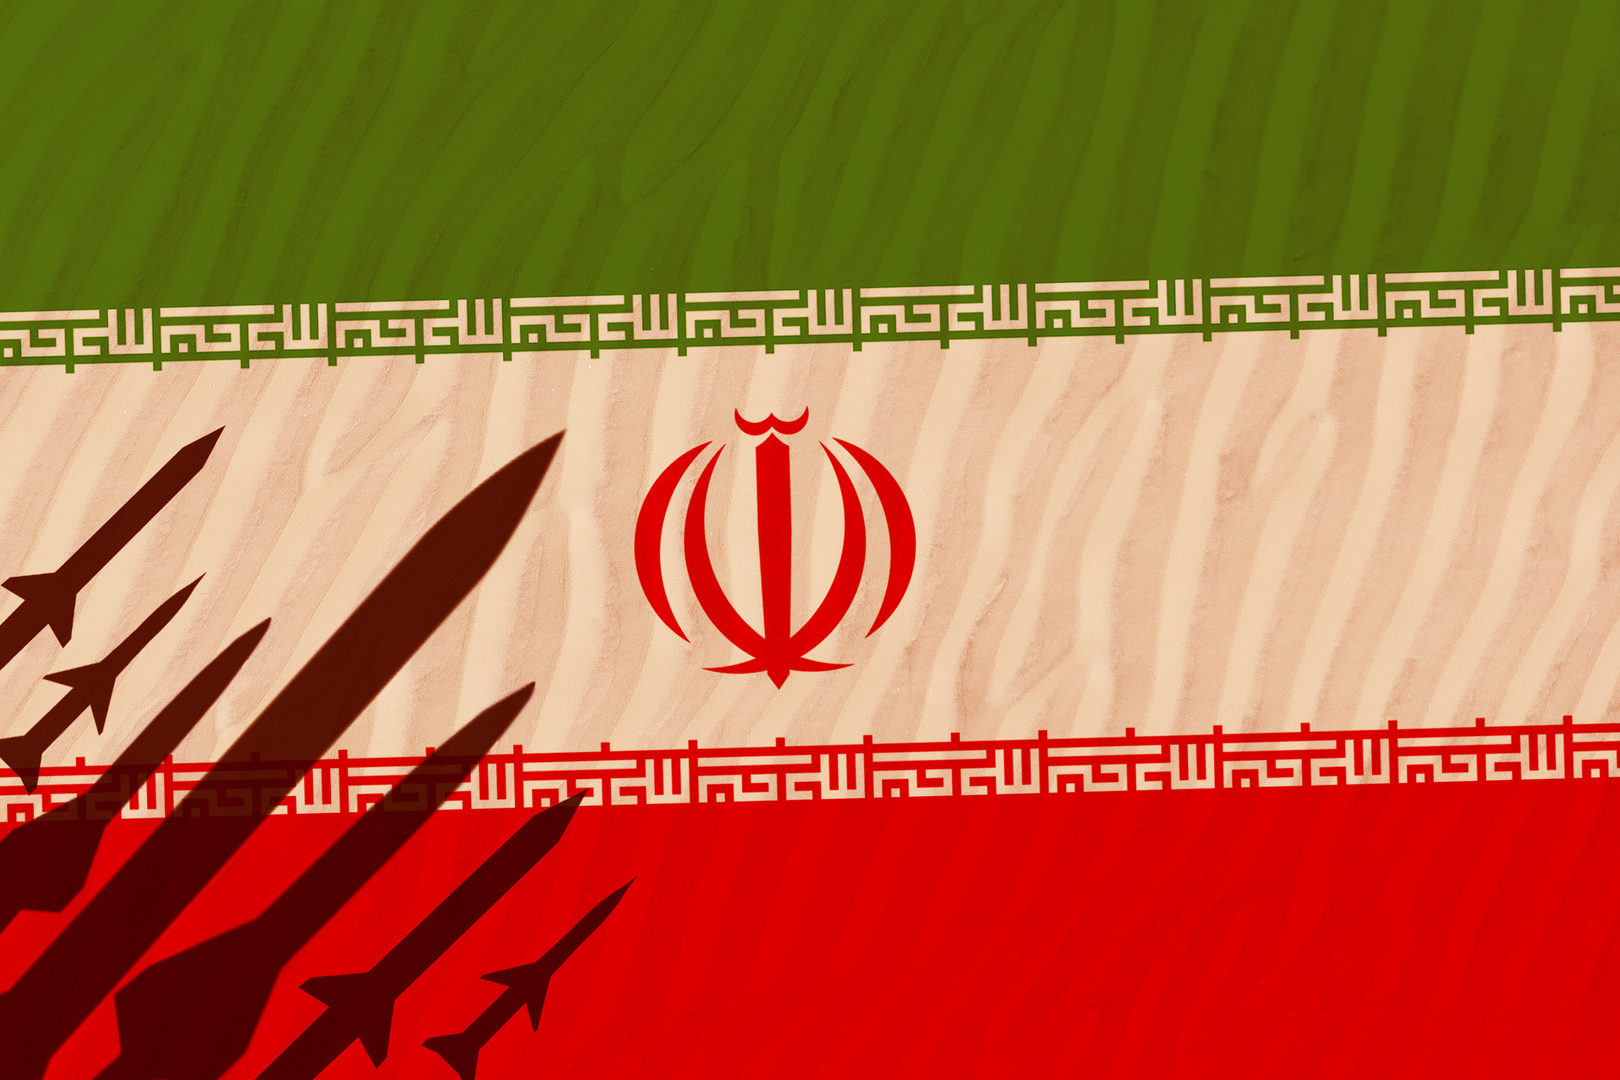 مصدران يوضحان لـCNN كيف تتوقع واشنطن حجم رد إسرائيل على الهجوم الإيراني